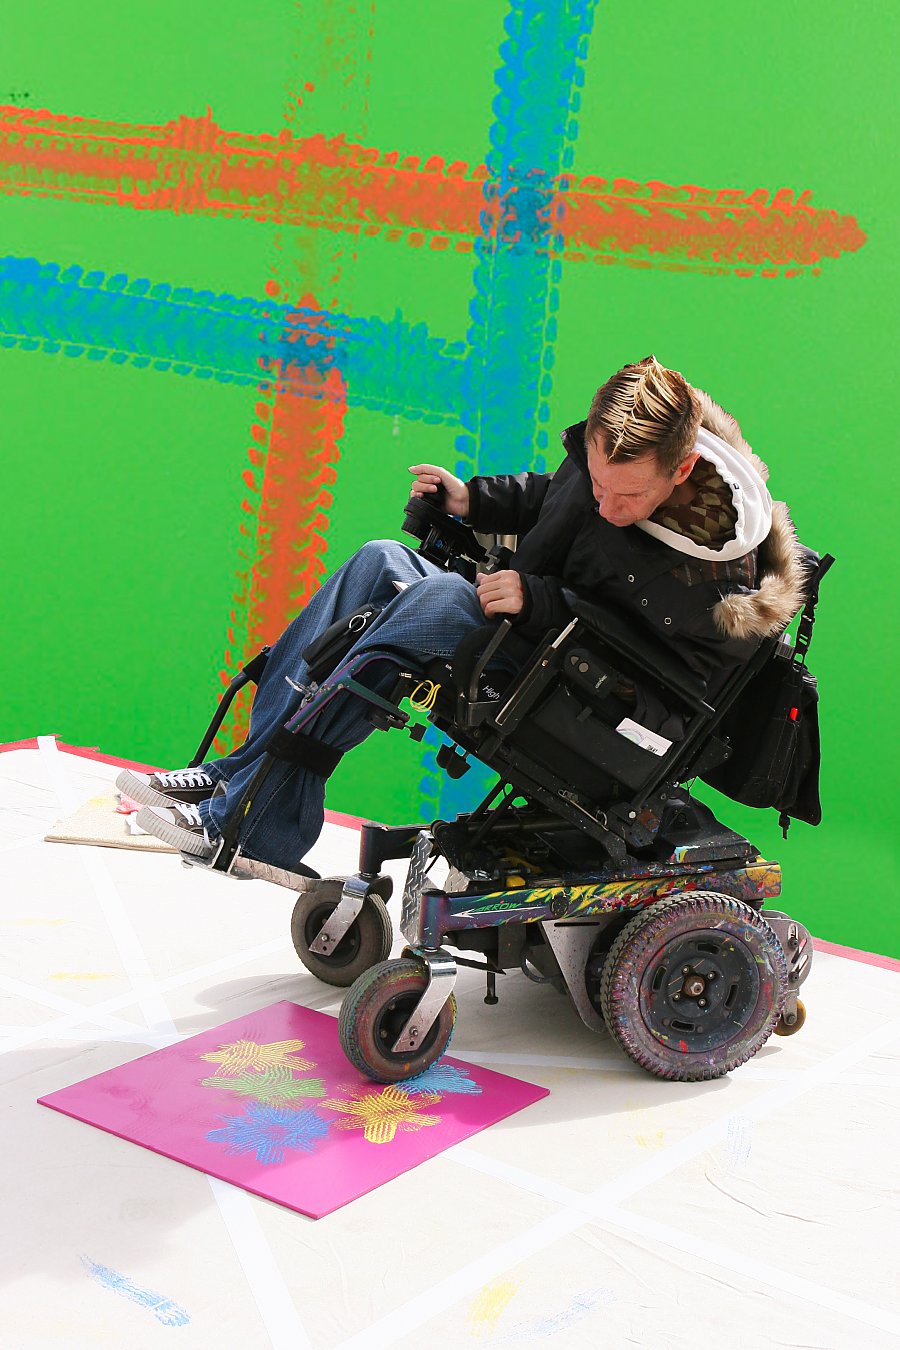 Tommy Hollenstein wheelchair artist creating art with his wheelchair